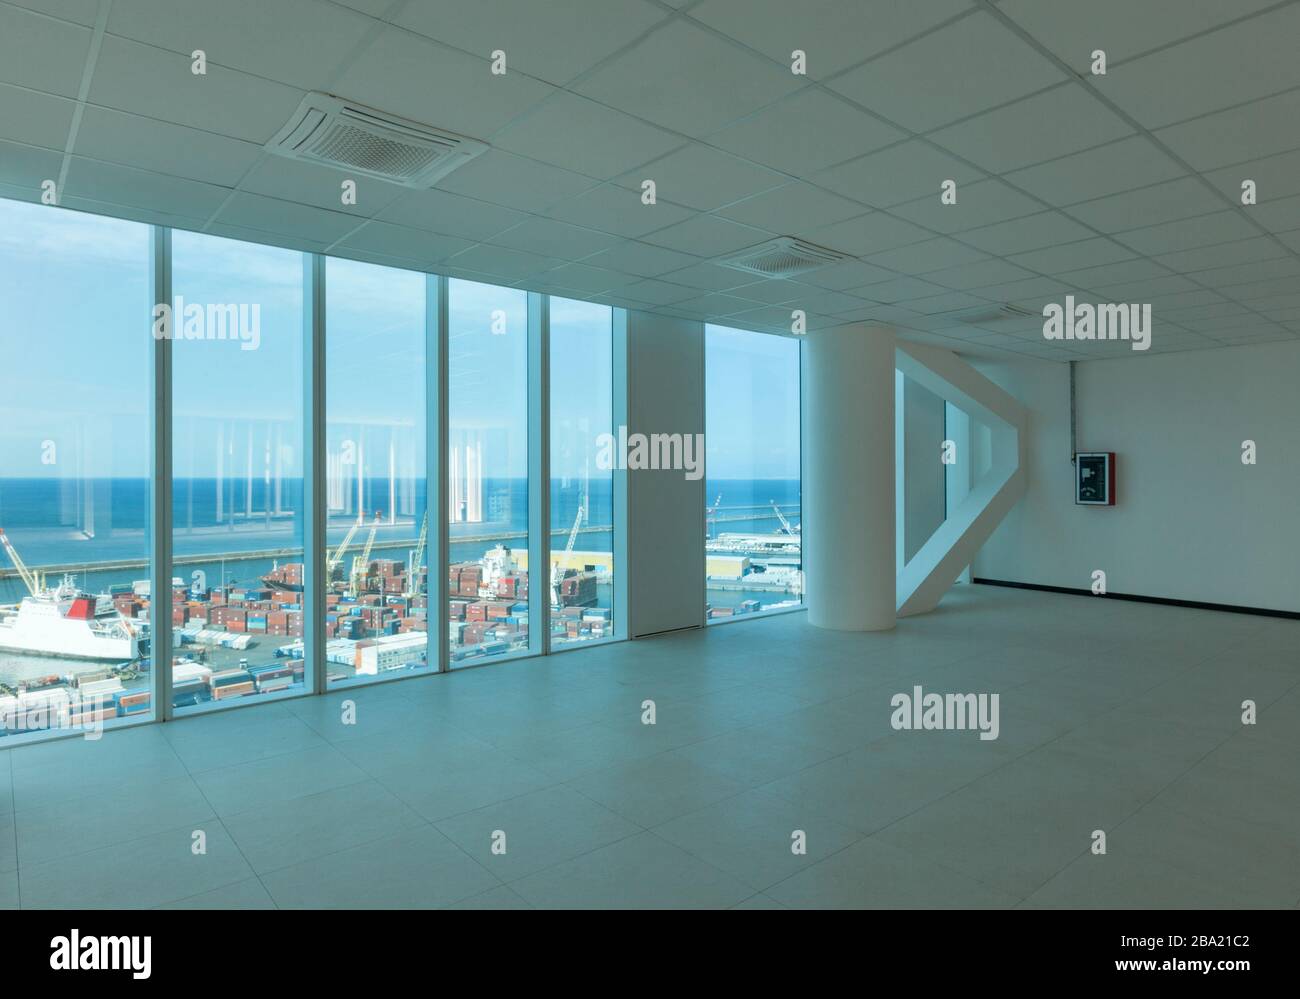 Intérieur, grand espace ouvert, gratte-ciel, fenêtres donnant sur la mer Banque D'Images